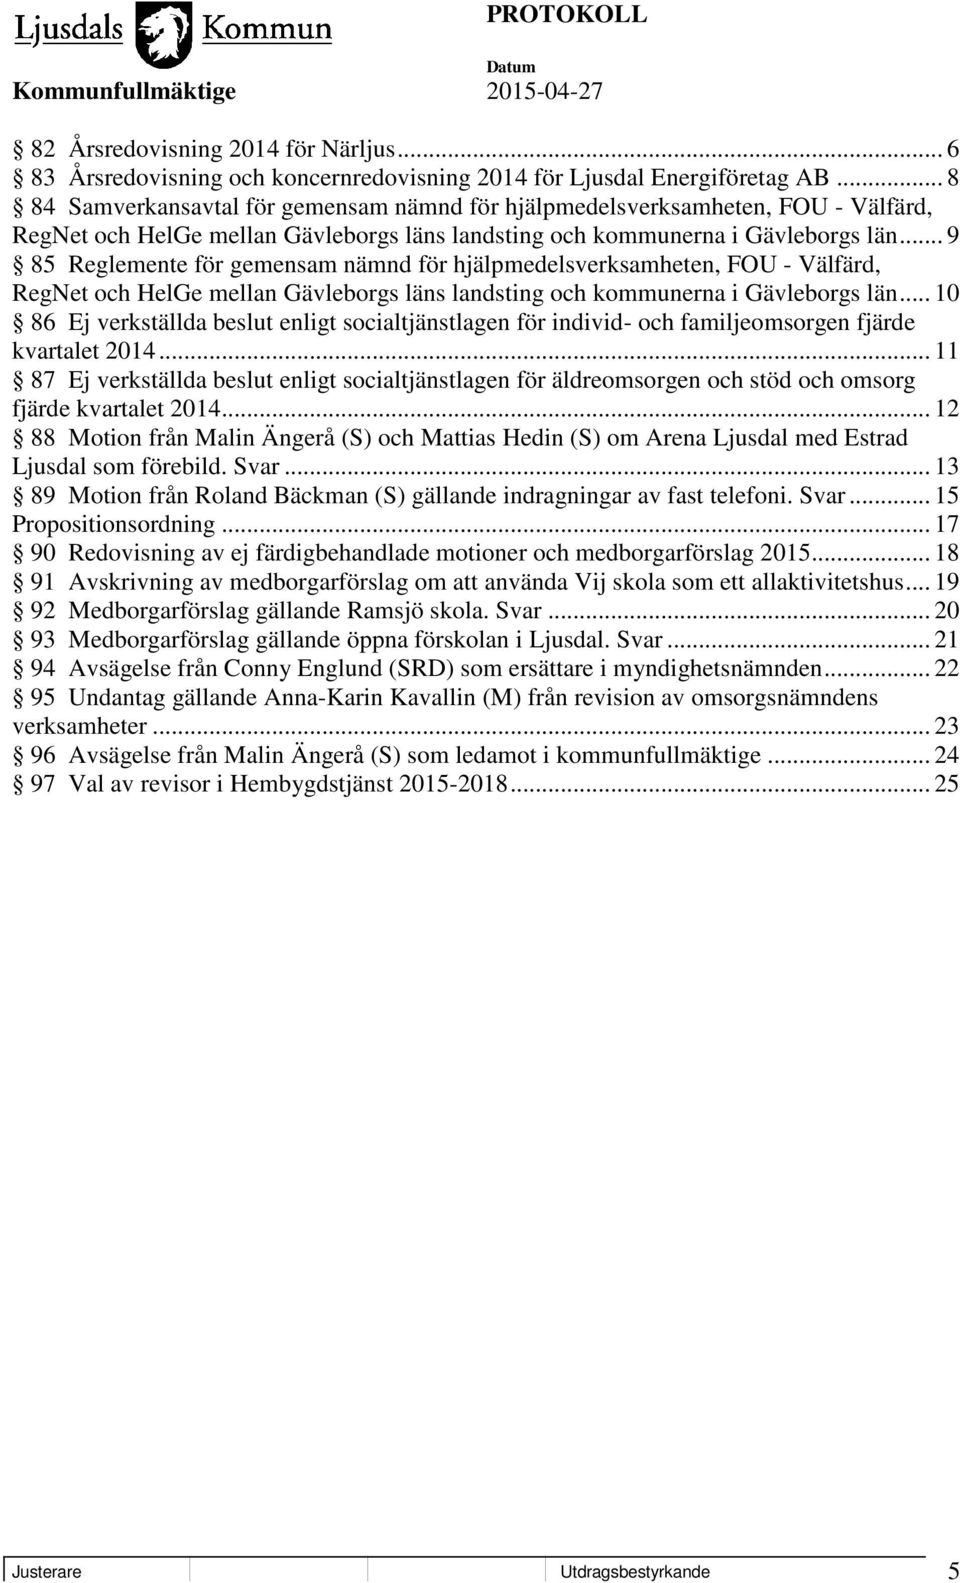 .. 9 85 Reglemente för gemensam nämnd för hjälpmedelsverksamheten, FOU - Välfärd, RegNet och HelGe mellan Gävleborgs läns landsting och kommunerna i Gävleborgs län.